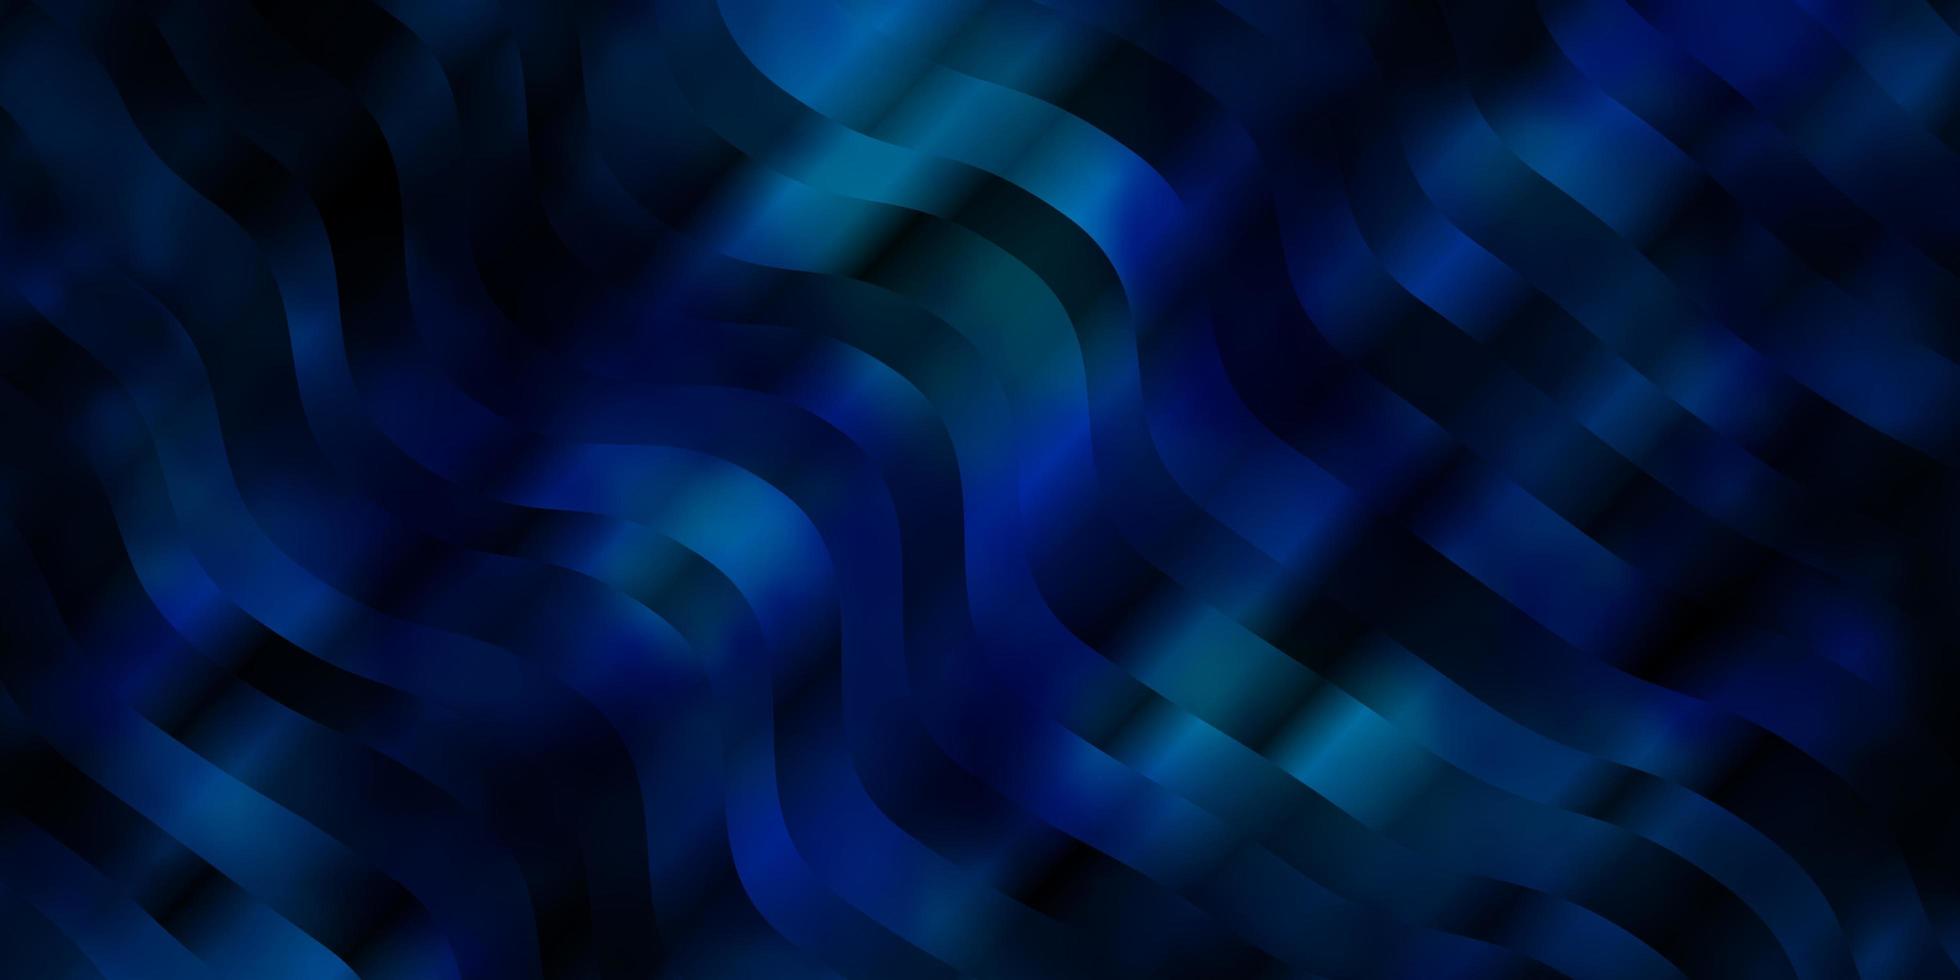 toile de fond de vecteur bleu clair avec des lignes pliées